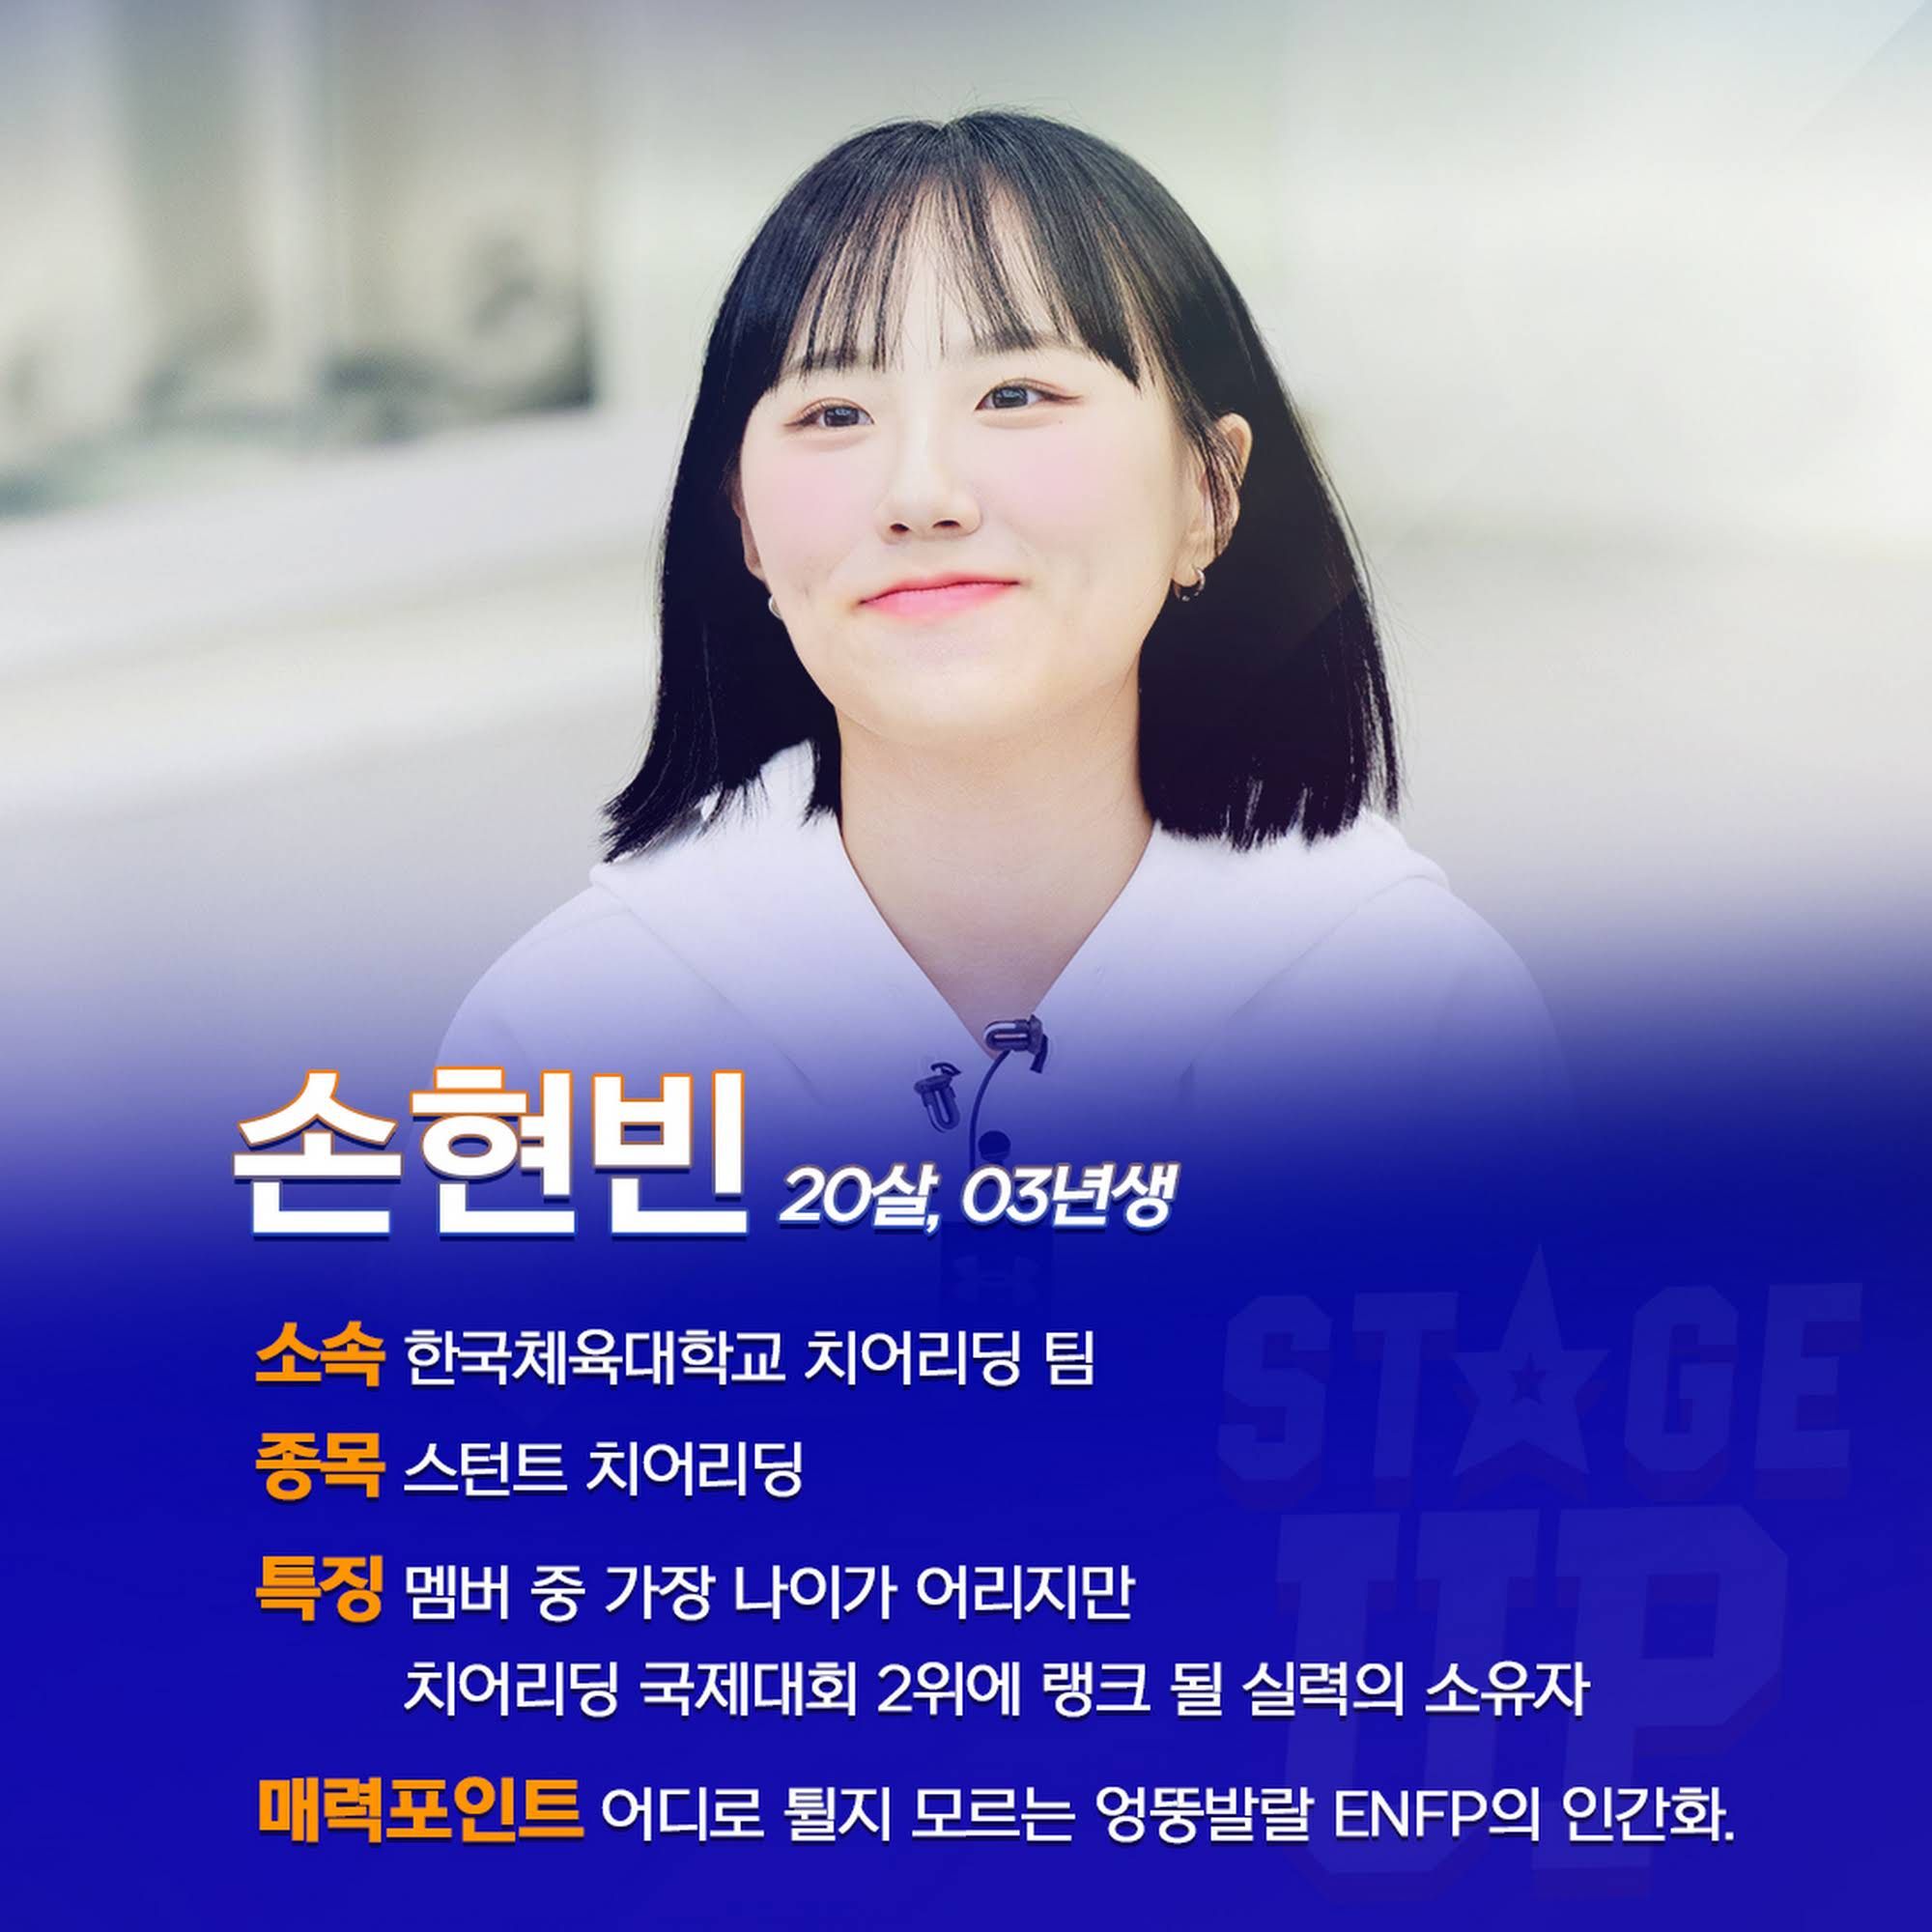 치어리딩 예능 '스테이지 업' 참가하는 치어리더 소개